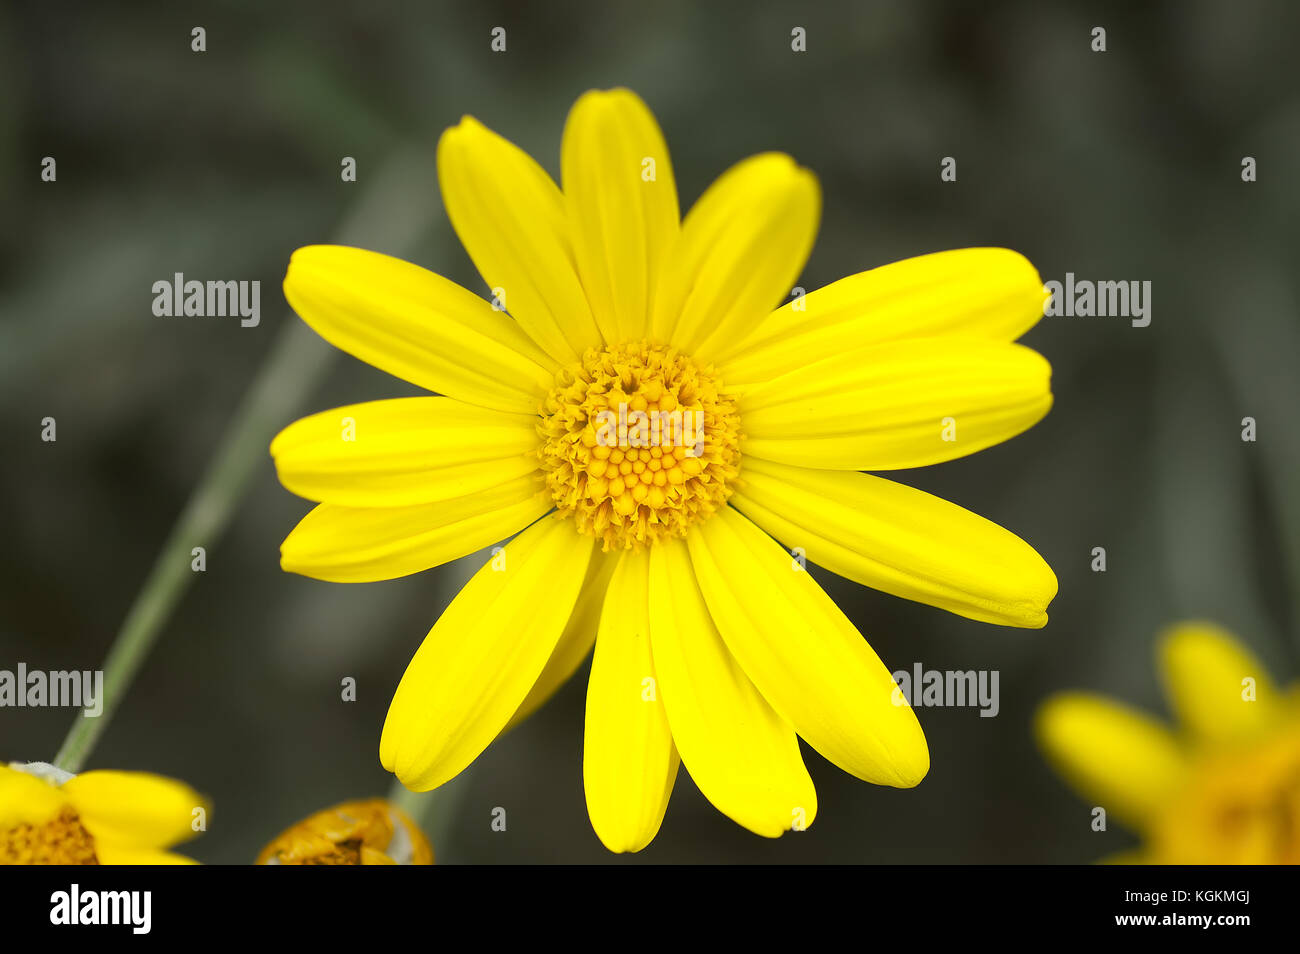 Primo piano giallo daisy noto come il mais calendula (glebionis segetum) contro uno sfondo scuro. La stagione autunnale di riviera francese. Foto Stock